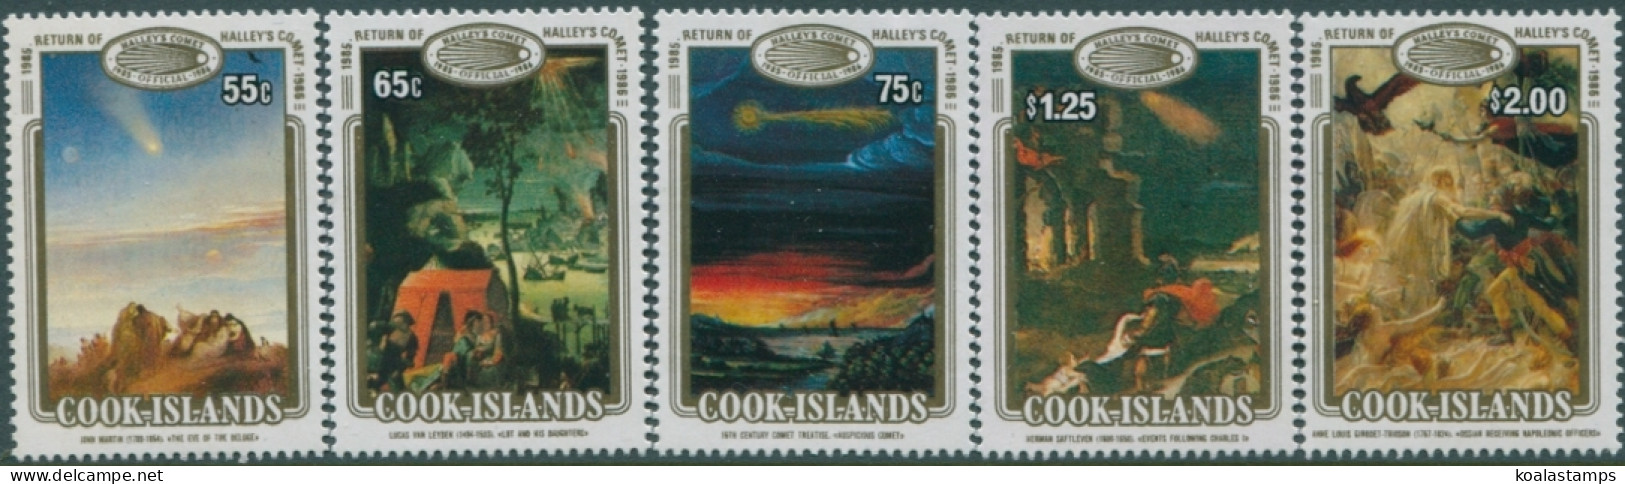 Cook Islands 1986 SG1058-1062 Halley's Comet Set MNH - Cook